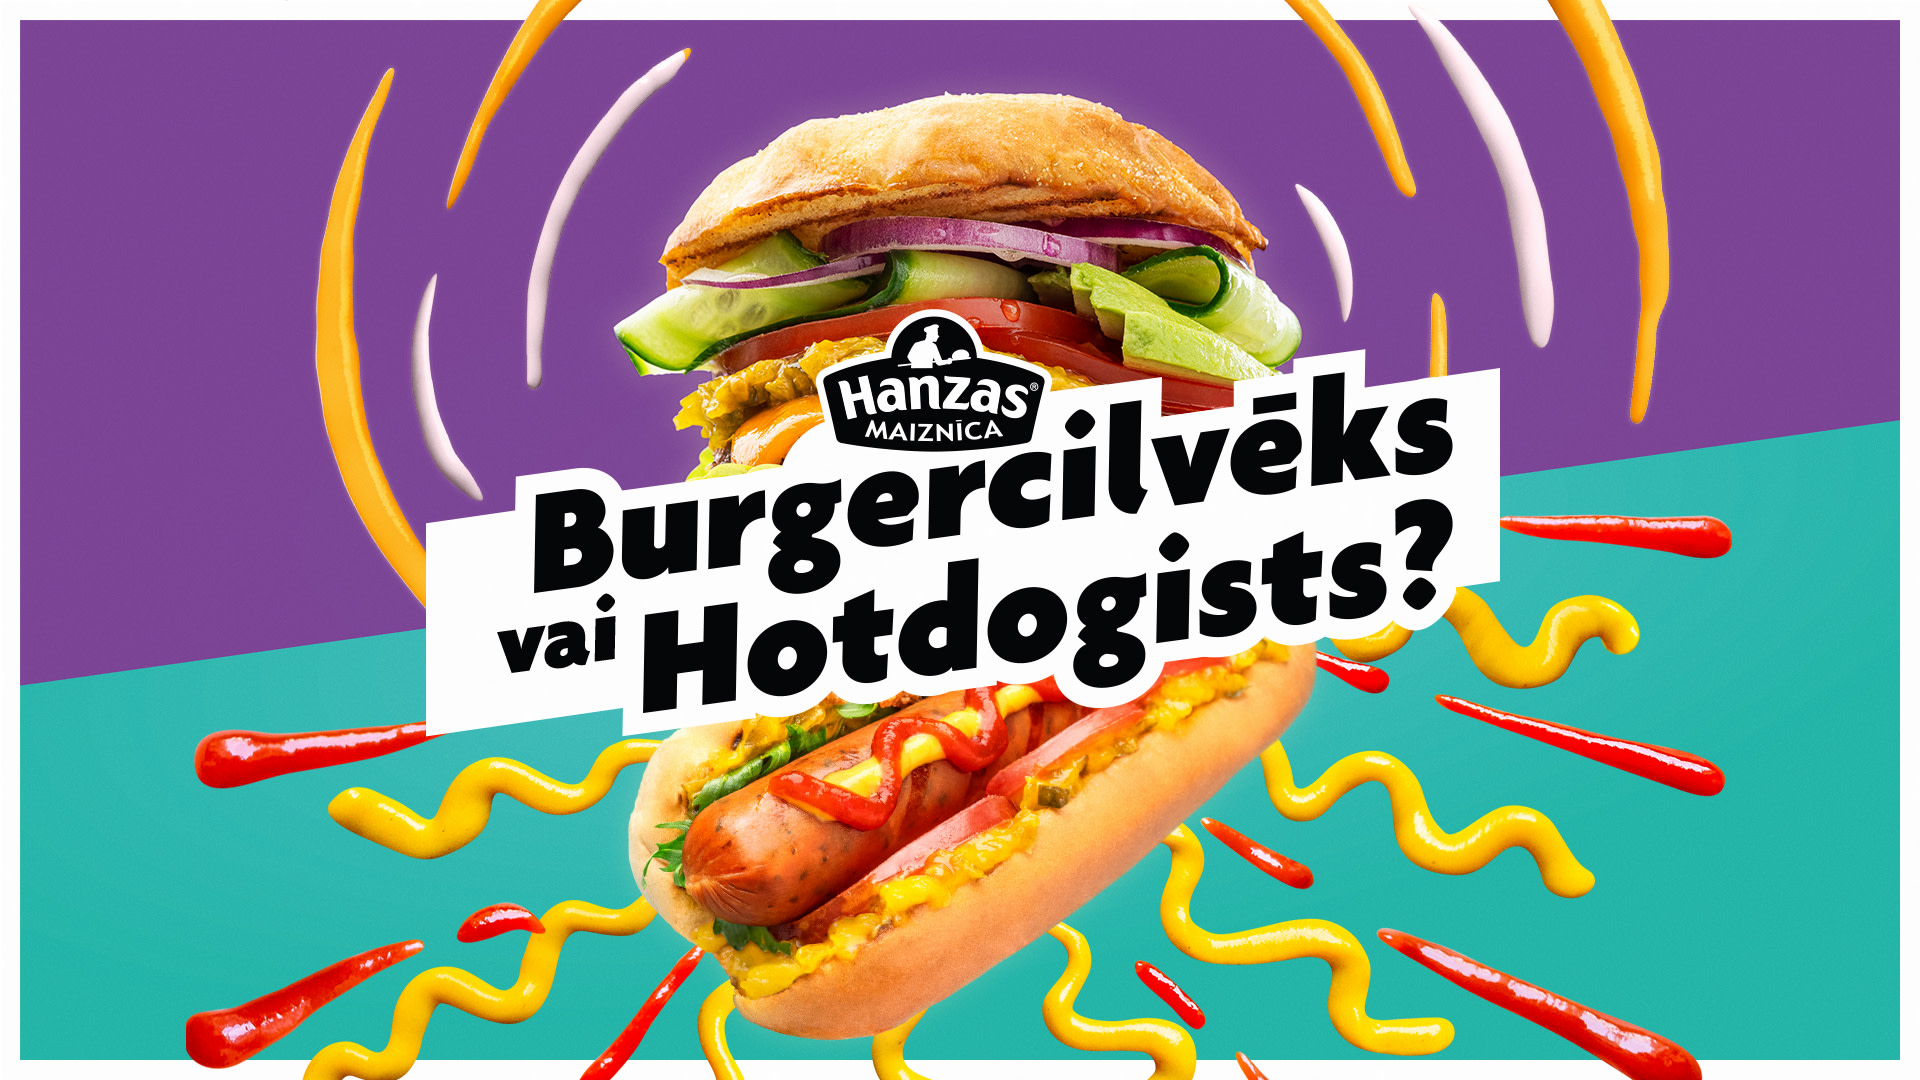 Burgercilvēks vai Hotdogists?